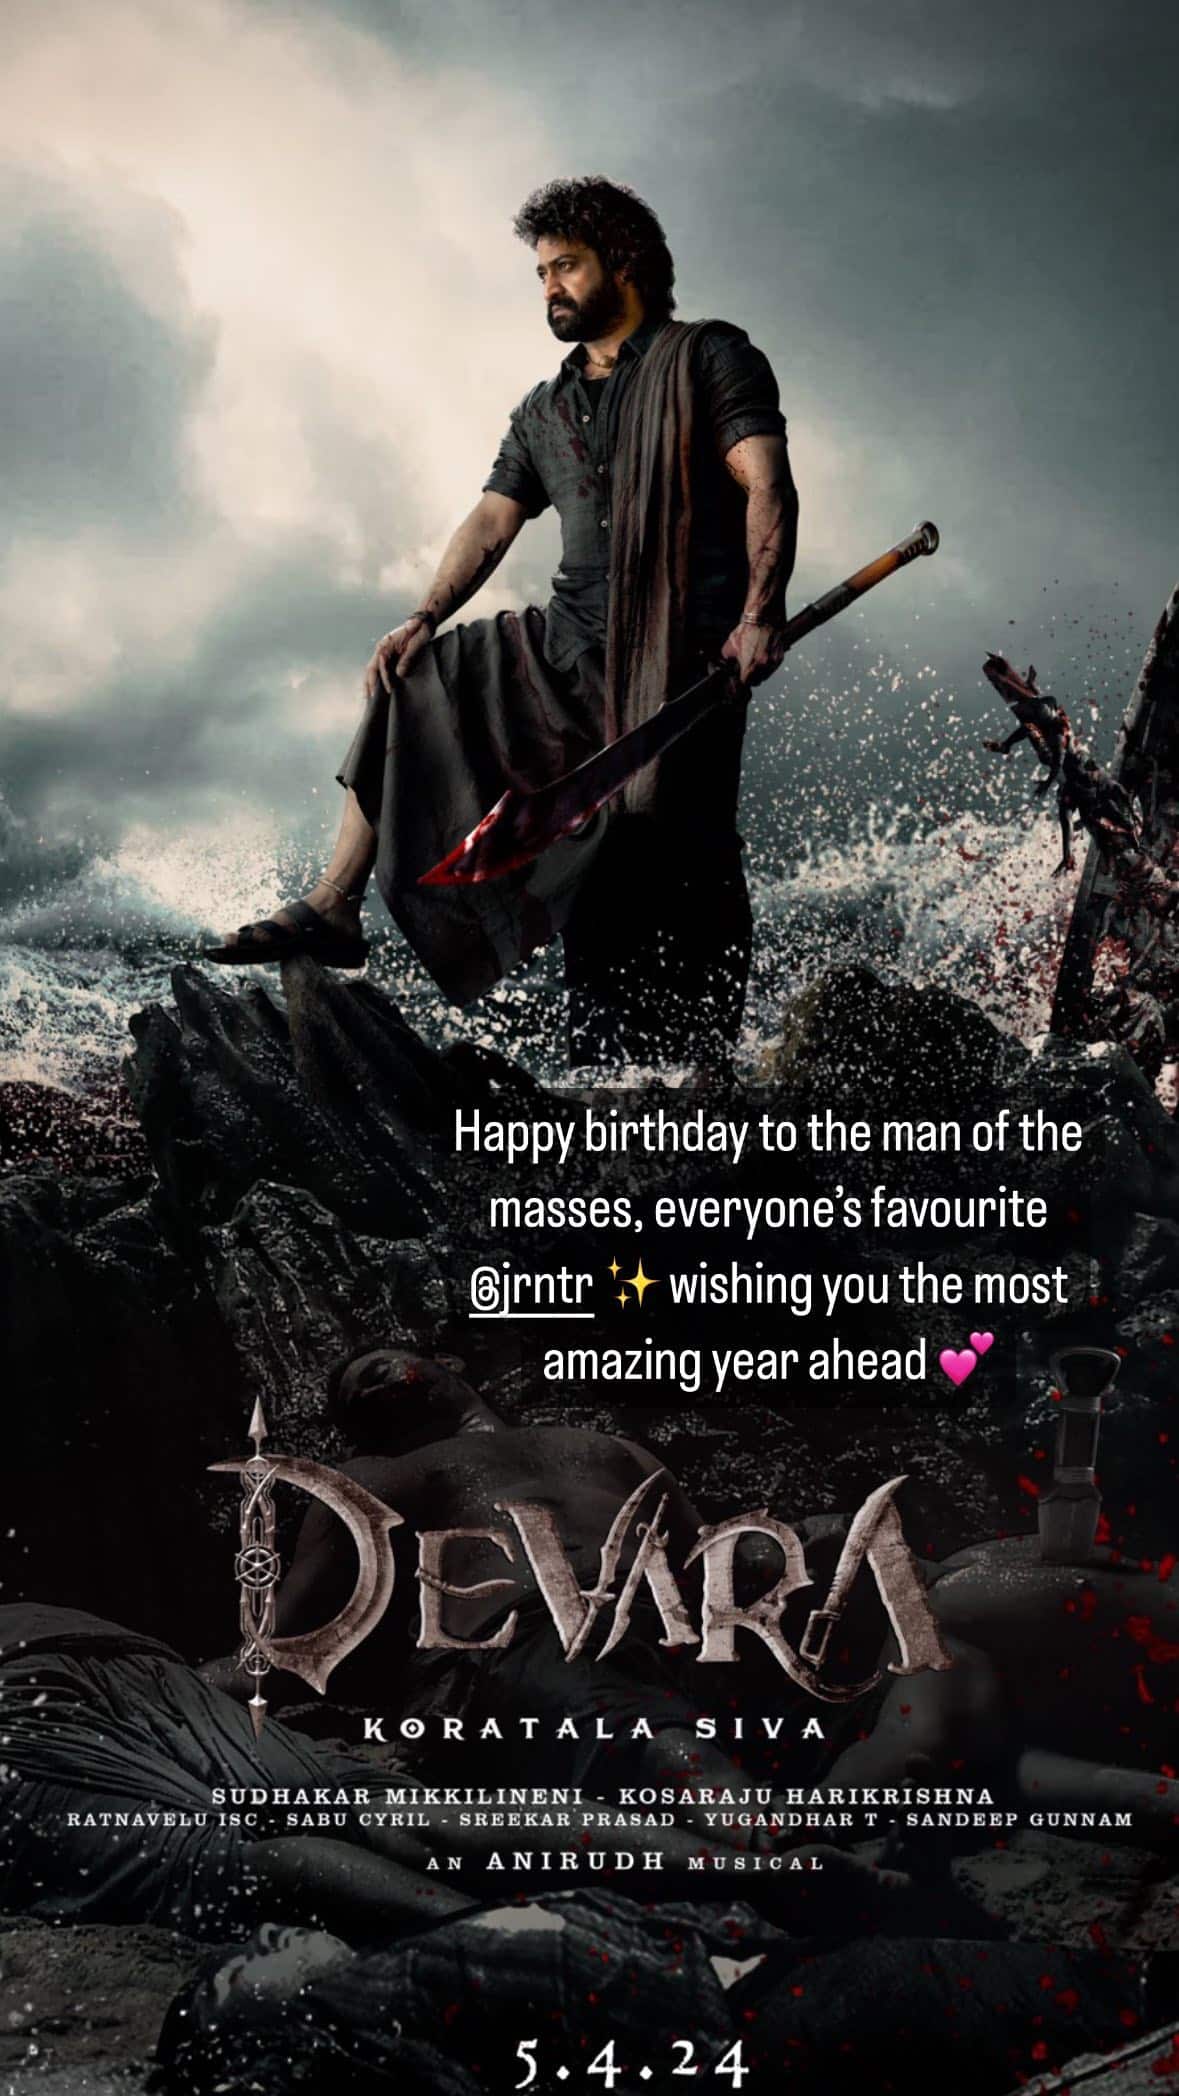 Devara will mark Janhvi Kapoor’s Telugu debut.